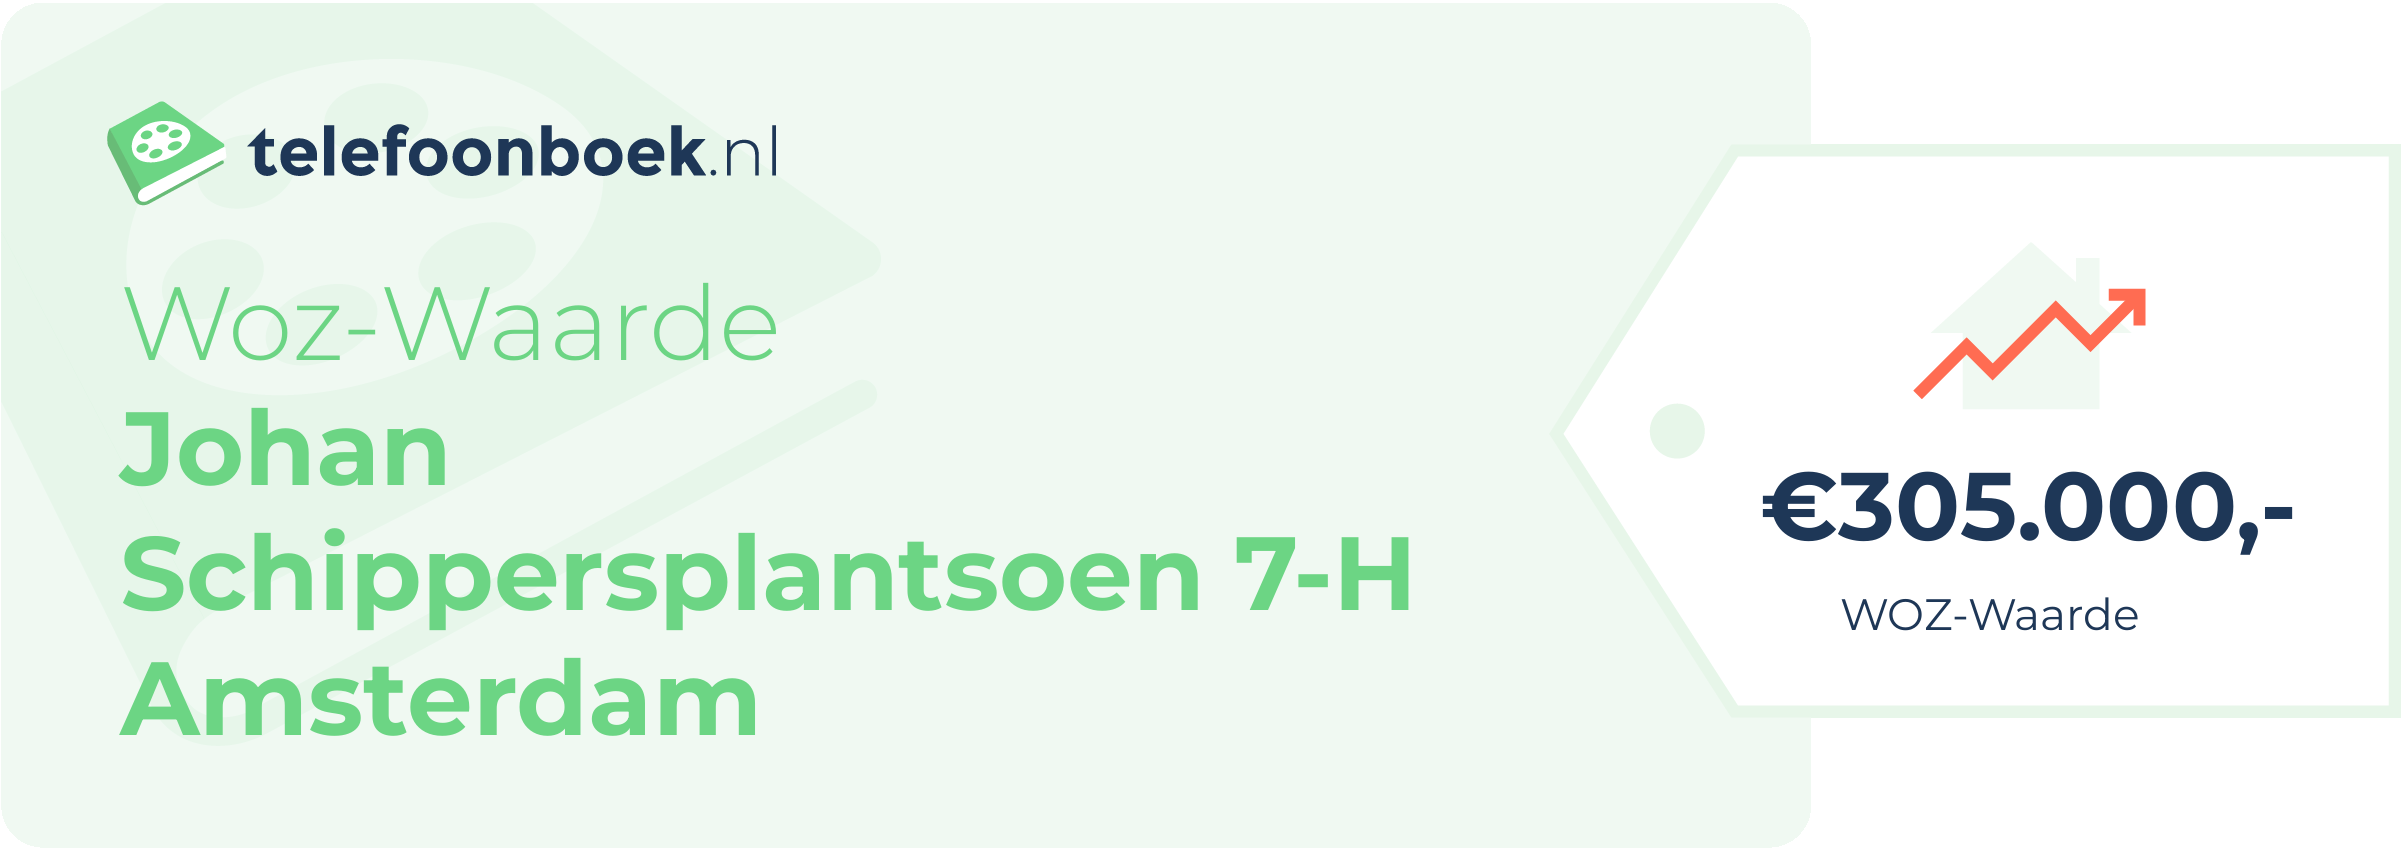 WOZ-waarde Johan Schippersplantsoen 7-H Amsterdam